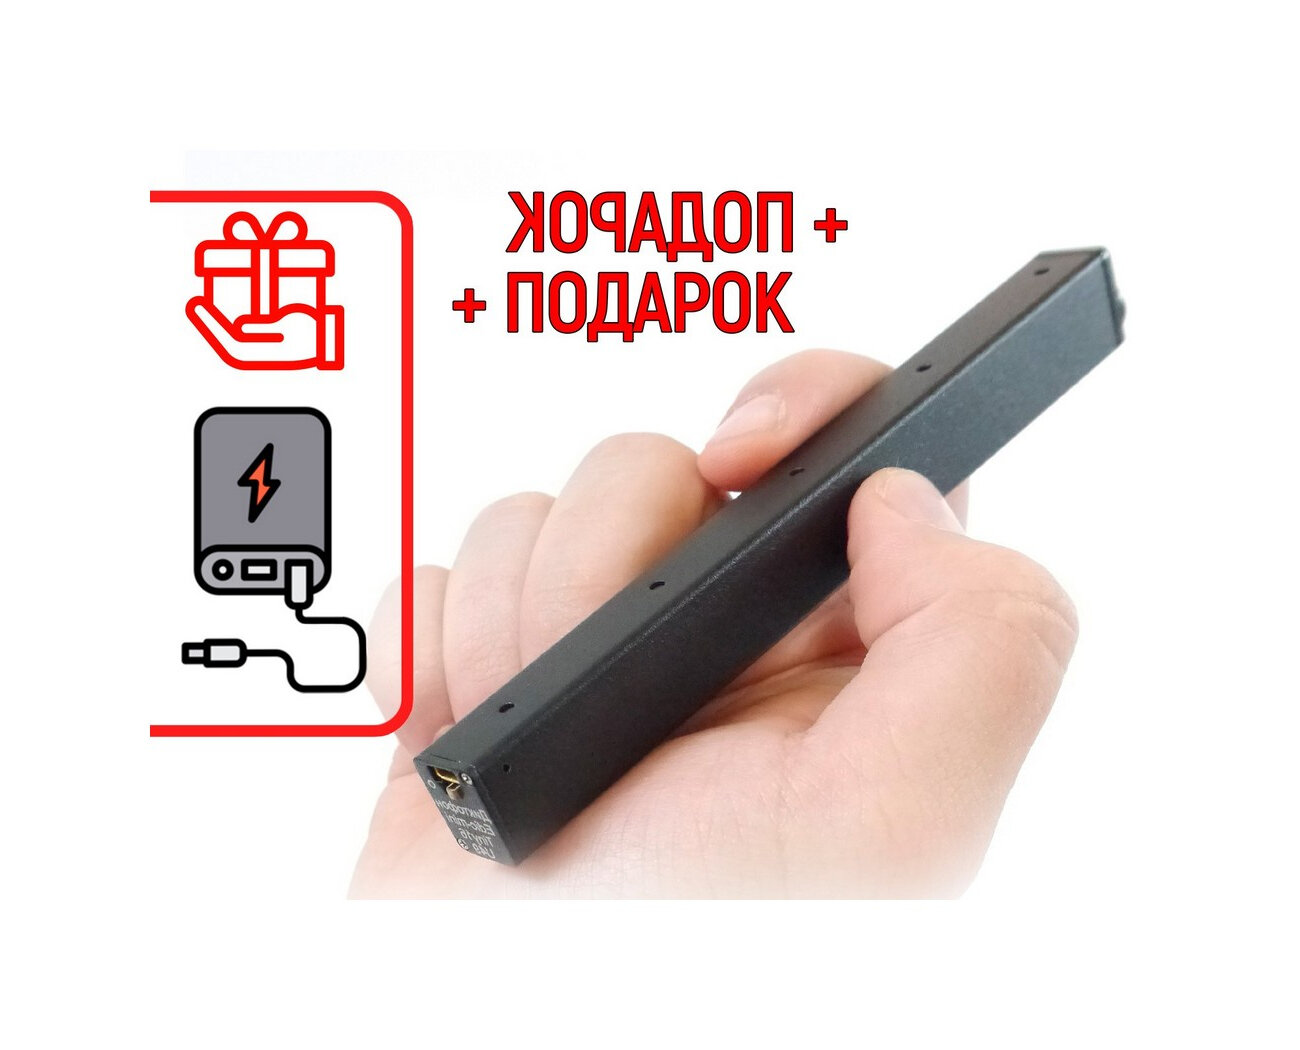 Цифровой диктофон Mini-edic U-49 TINY-16 (Рос) (Z63727IM) + подарок (Powerbank 10000 mAh) - диктофон для записи разговоров профессиональный, диктофо